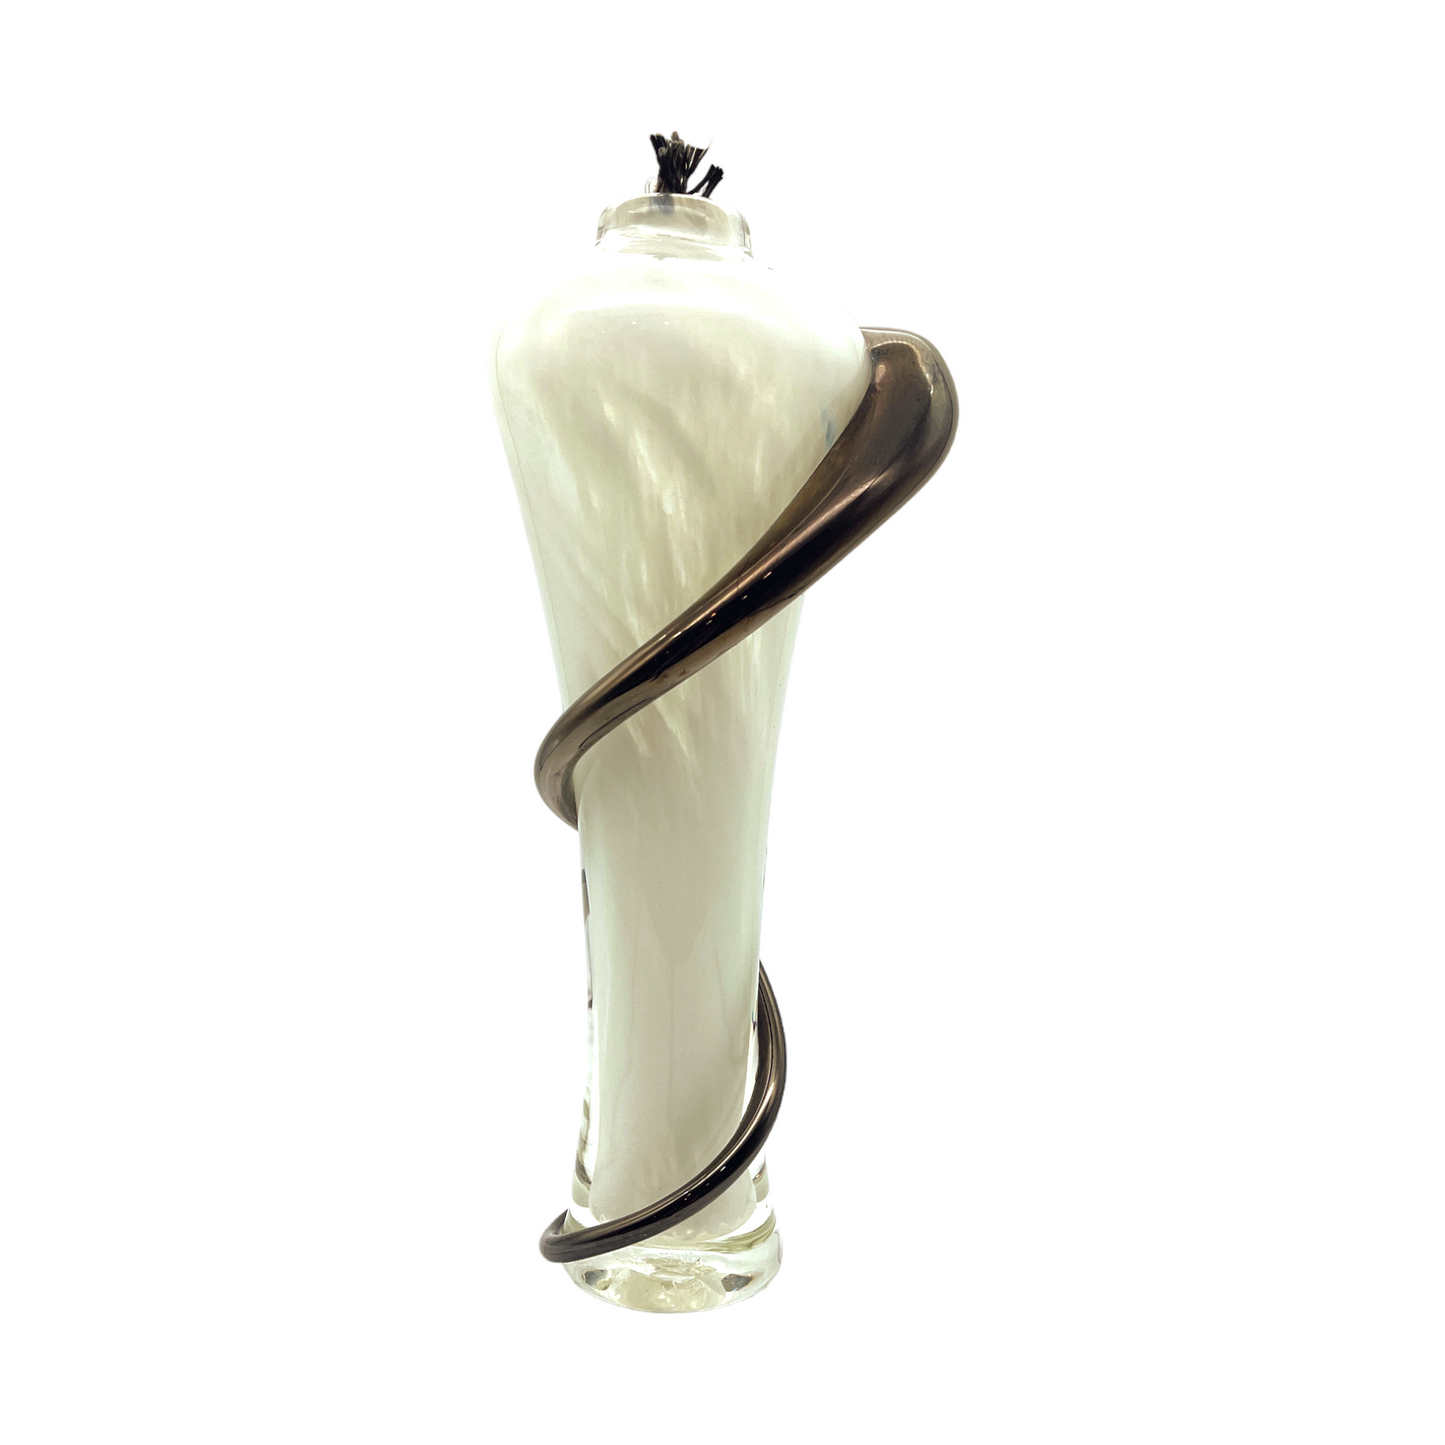 Black & White Elegance: Handcrafted Art Glass Oil Lamp